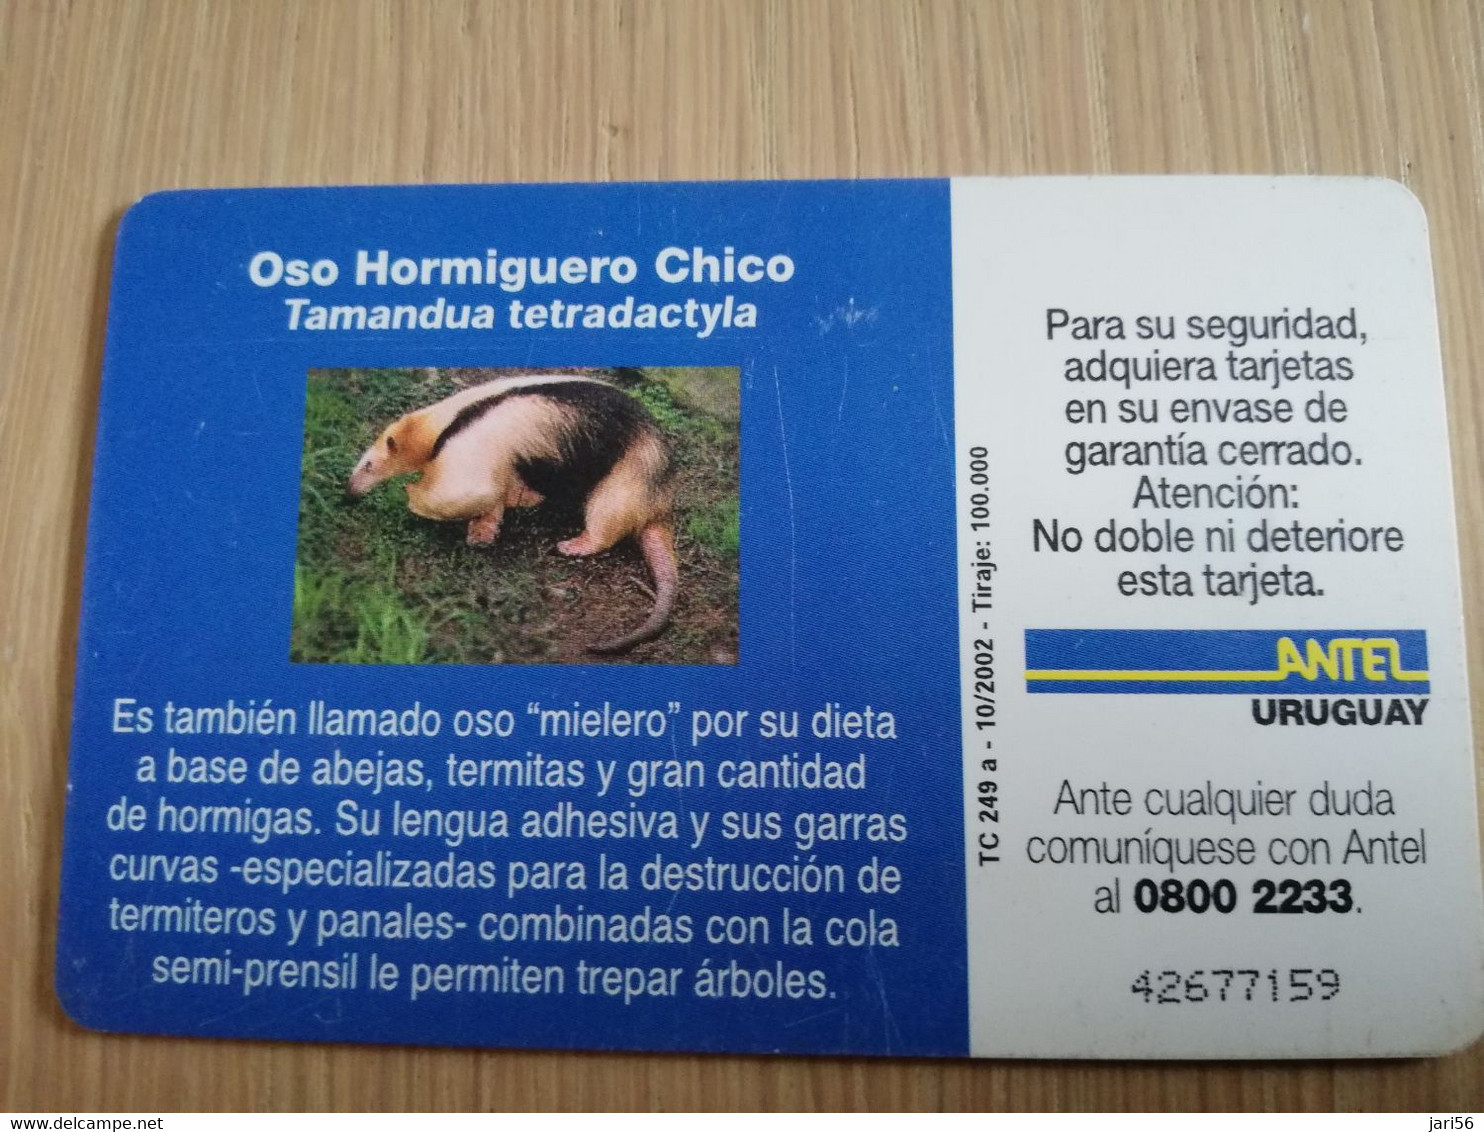 URUGUAY CHIPCARD  ANIMAL    $50   OSO HORMIGUERO           Nice Used Card    **4556** - Uruguay